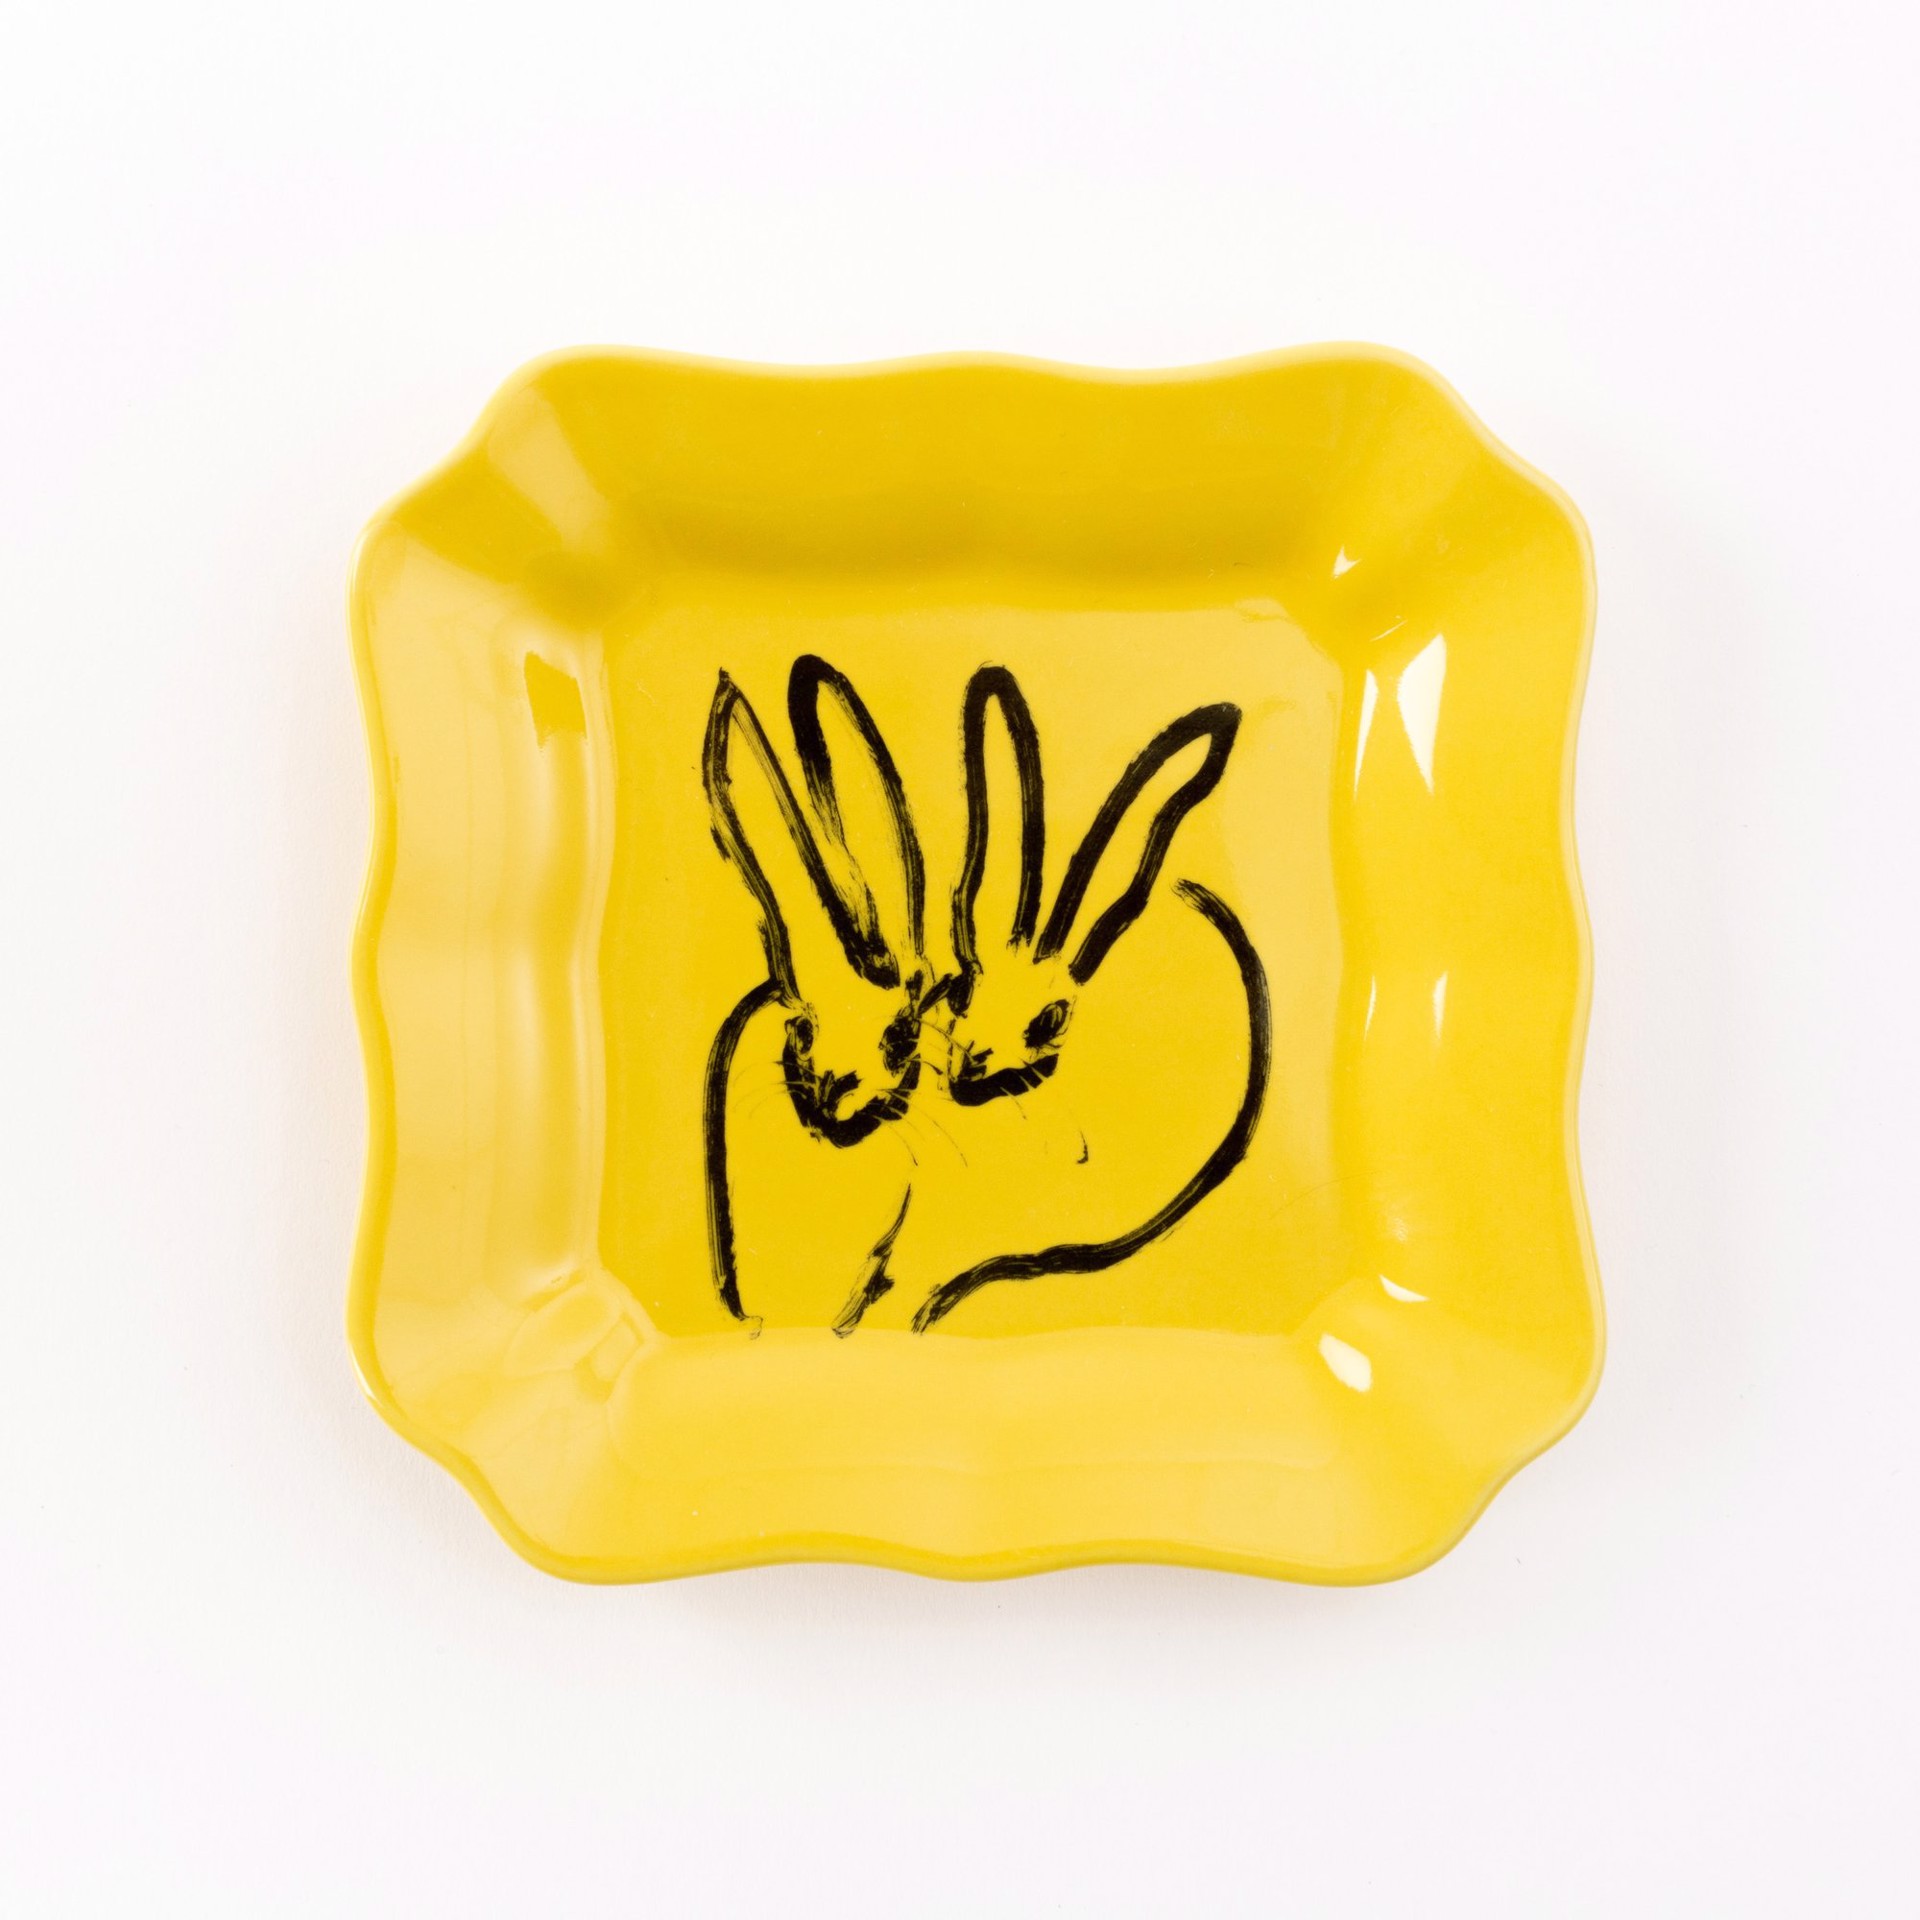 Bunny Portrait Plate - Yellow by Hunt Slonem (Hop Up Shop)